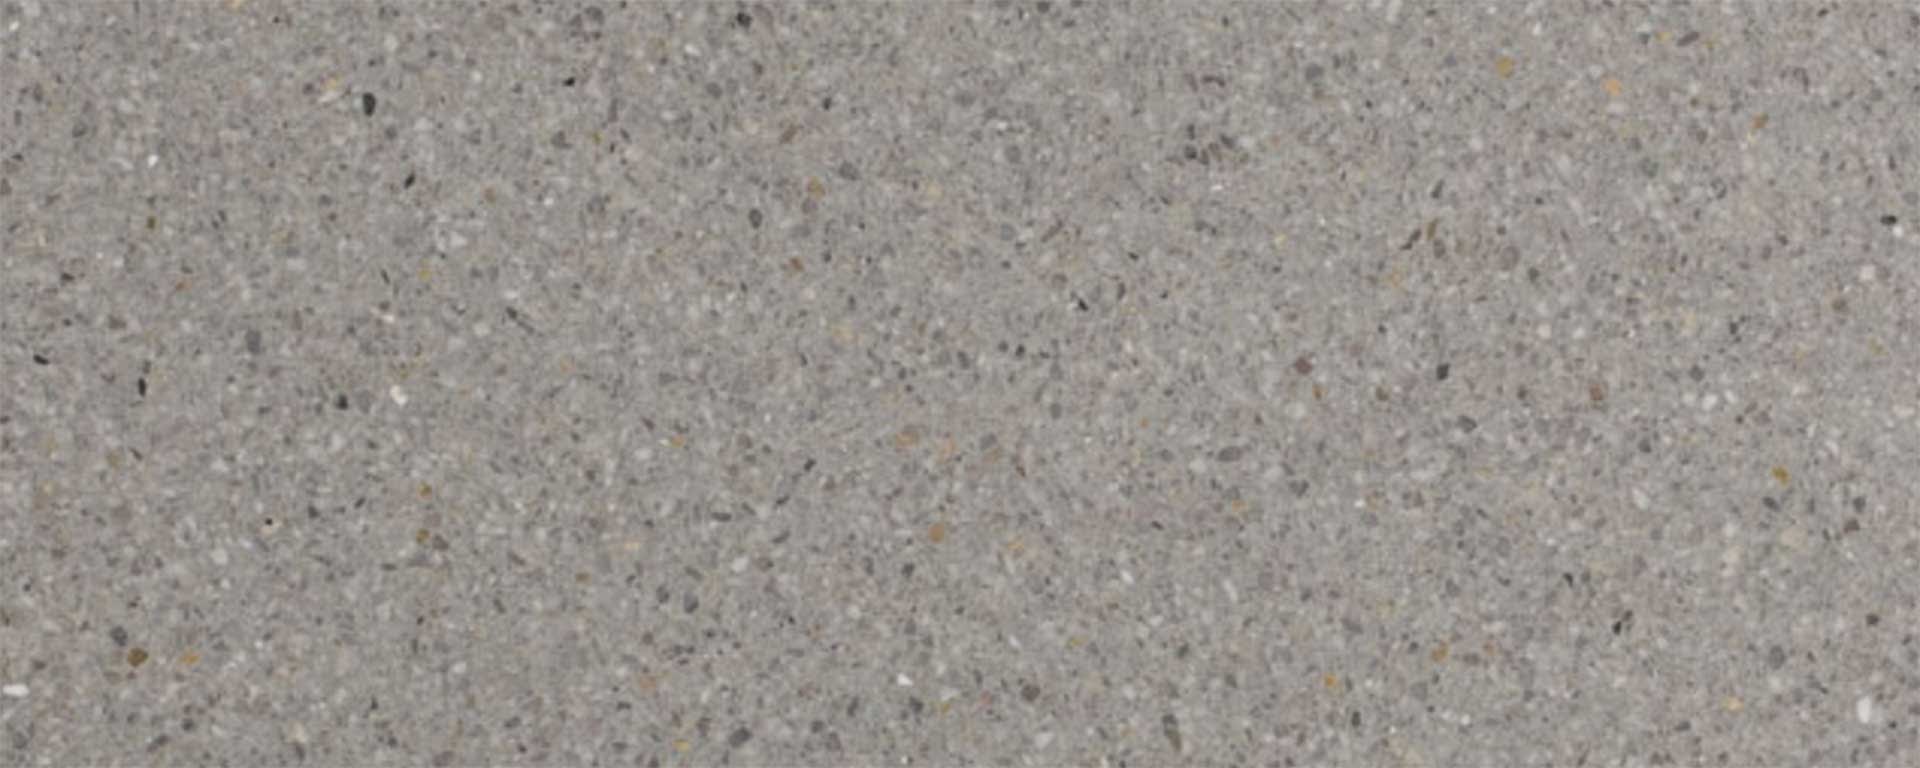 MMDA-012-terrazzo-marmo-cemento